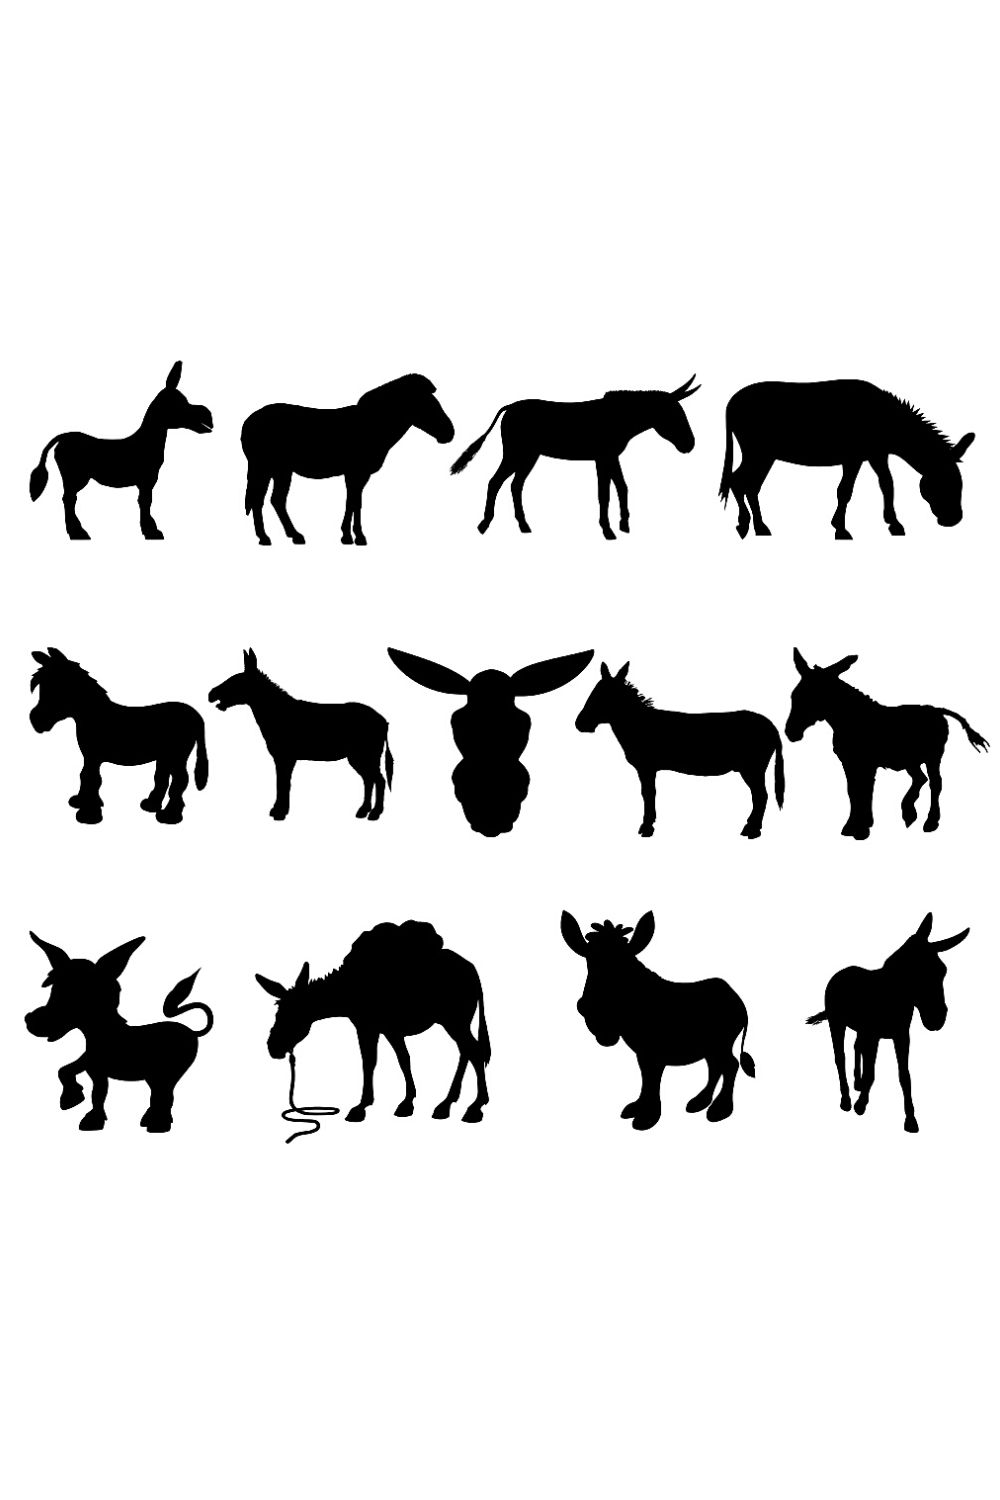 Donkey Silhouette Illustrations Bundle Pinterest image.